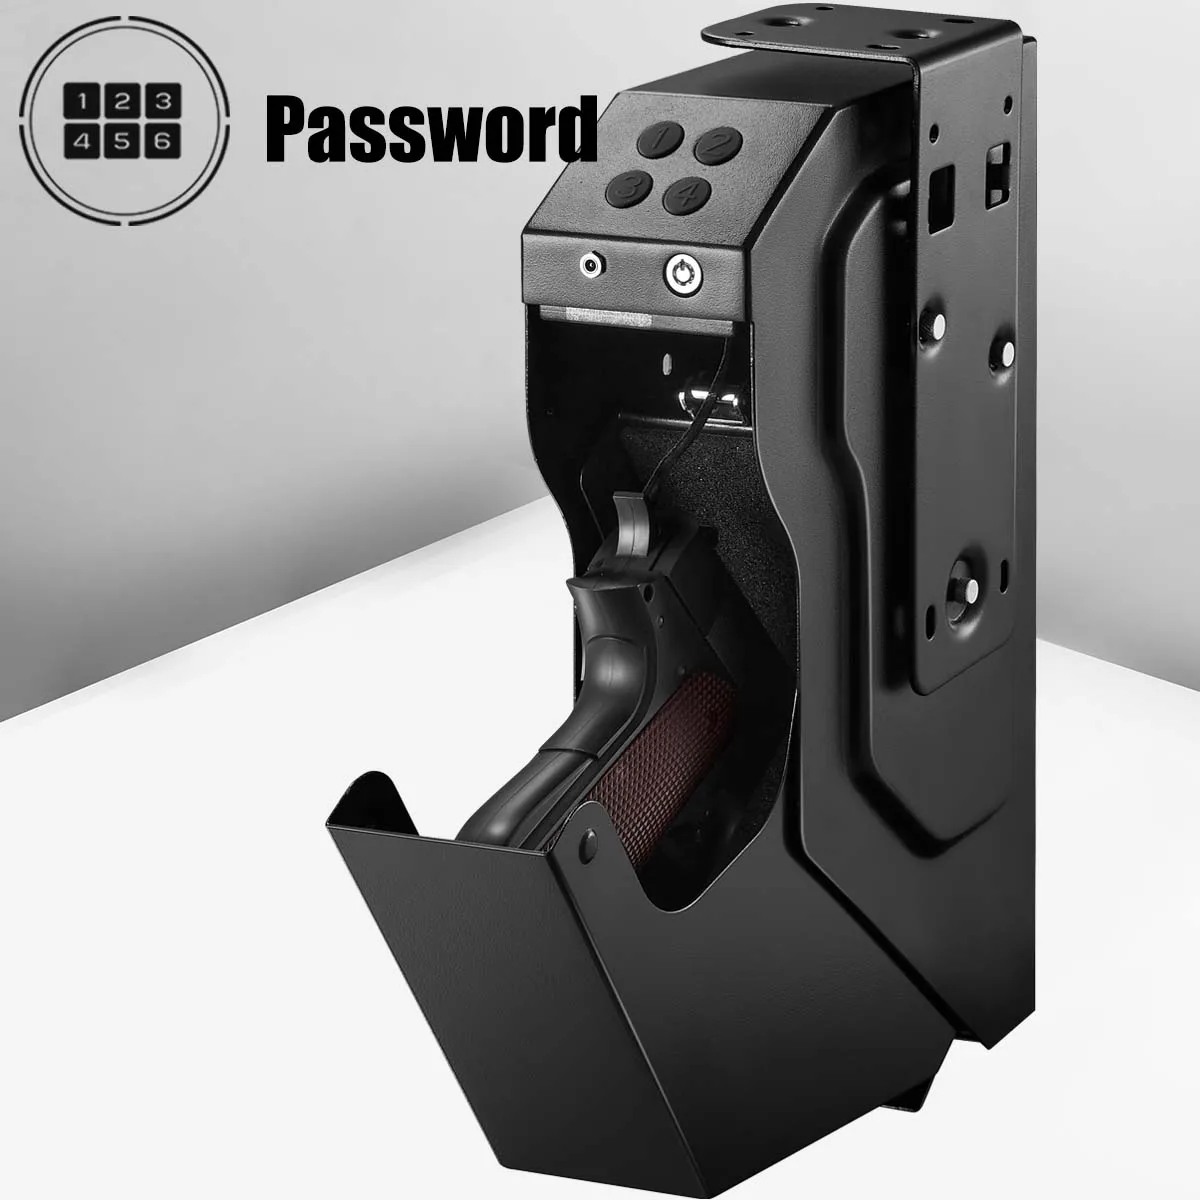 Электронный пистолет со скрытым паролем, сейф для дома и автомобиля, брендовый чехол Ospon